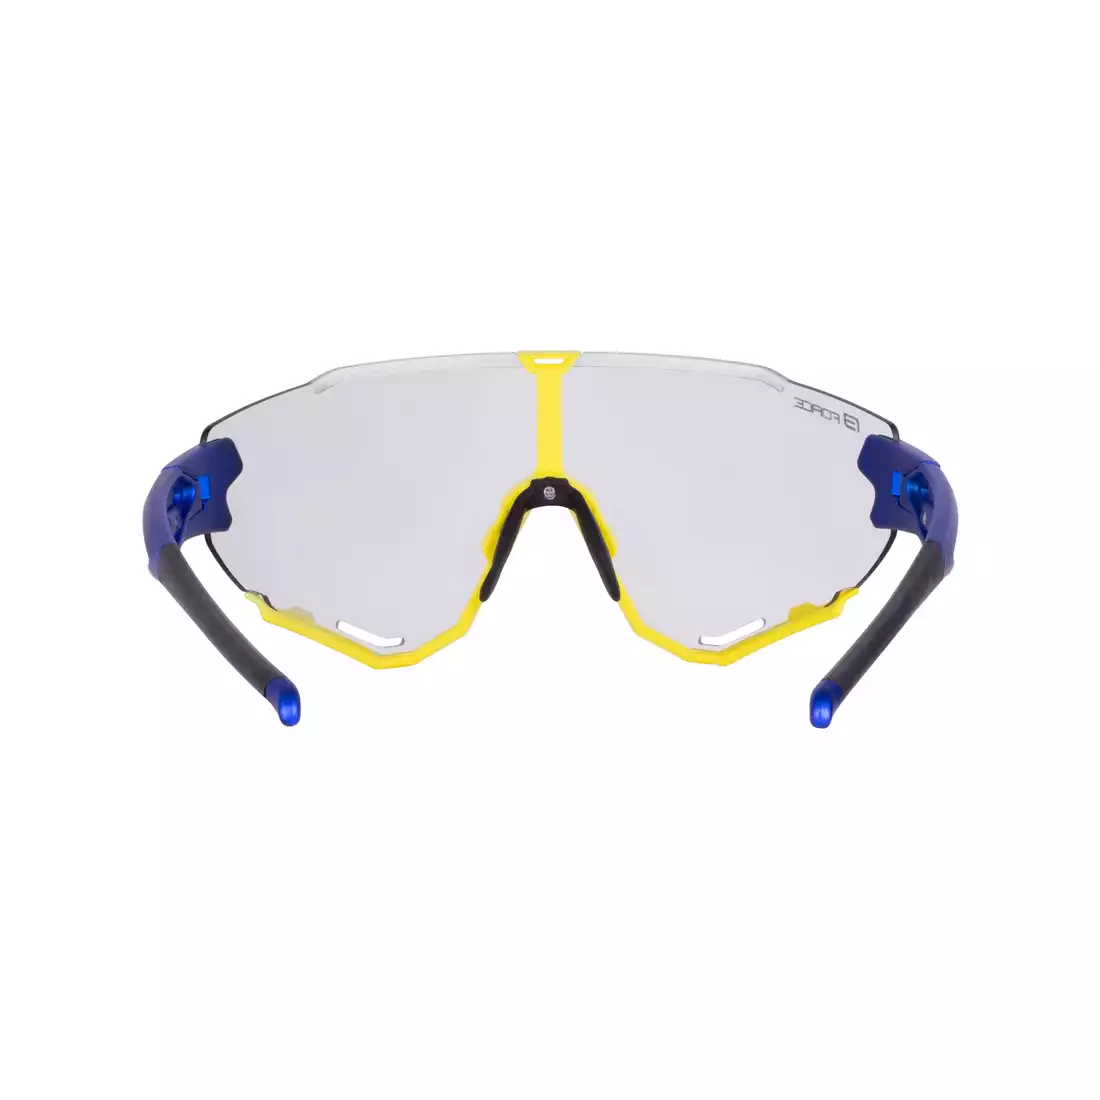 FORCE CREED Fotochromatické športové okuliare, modré a žlté